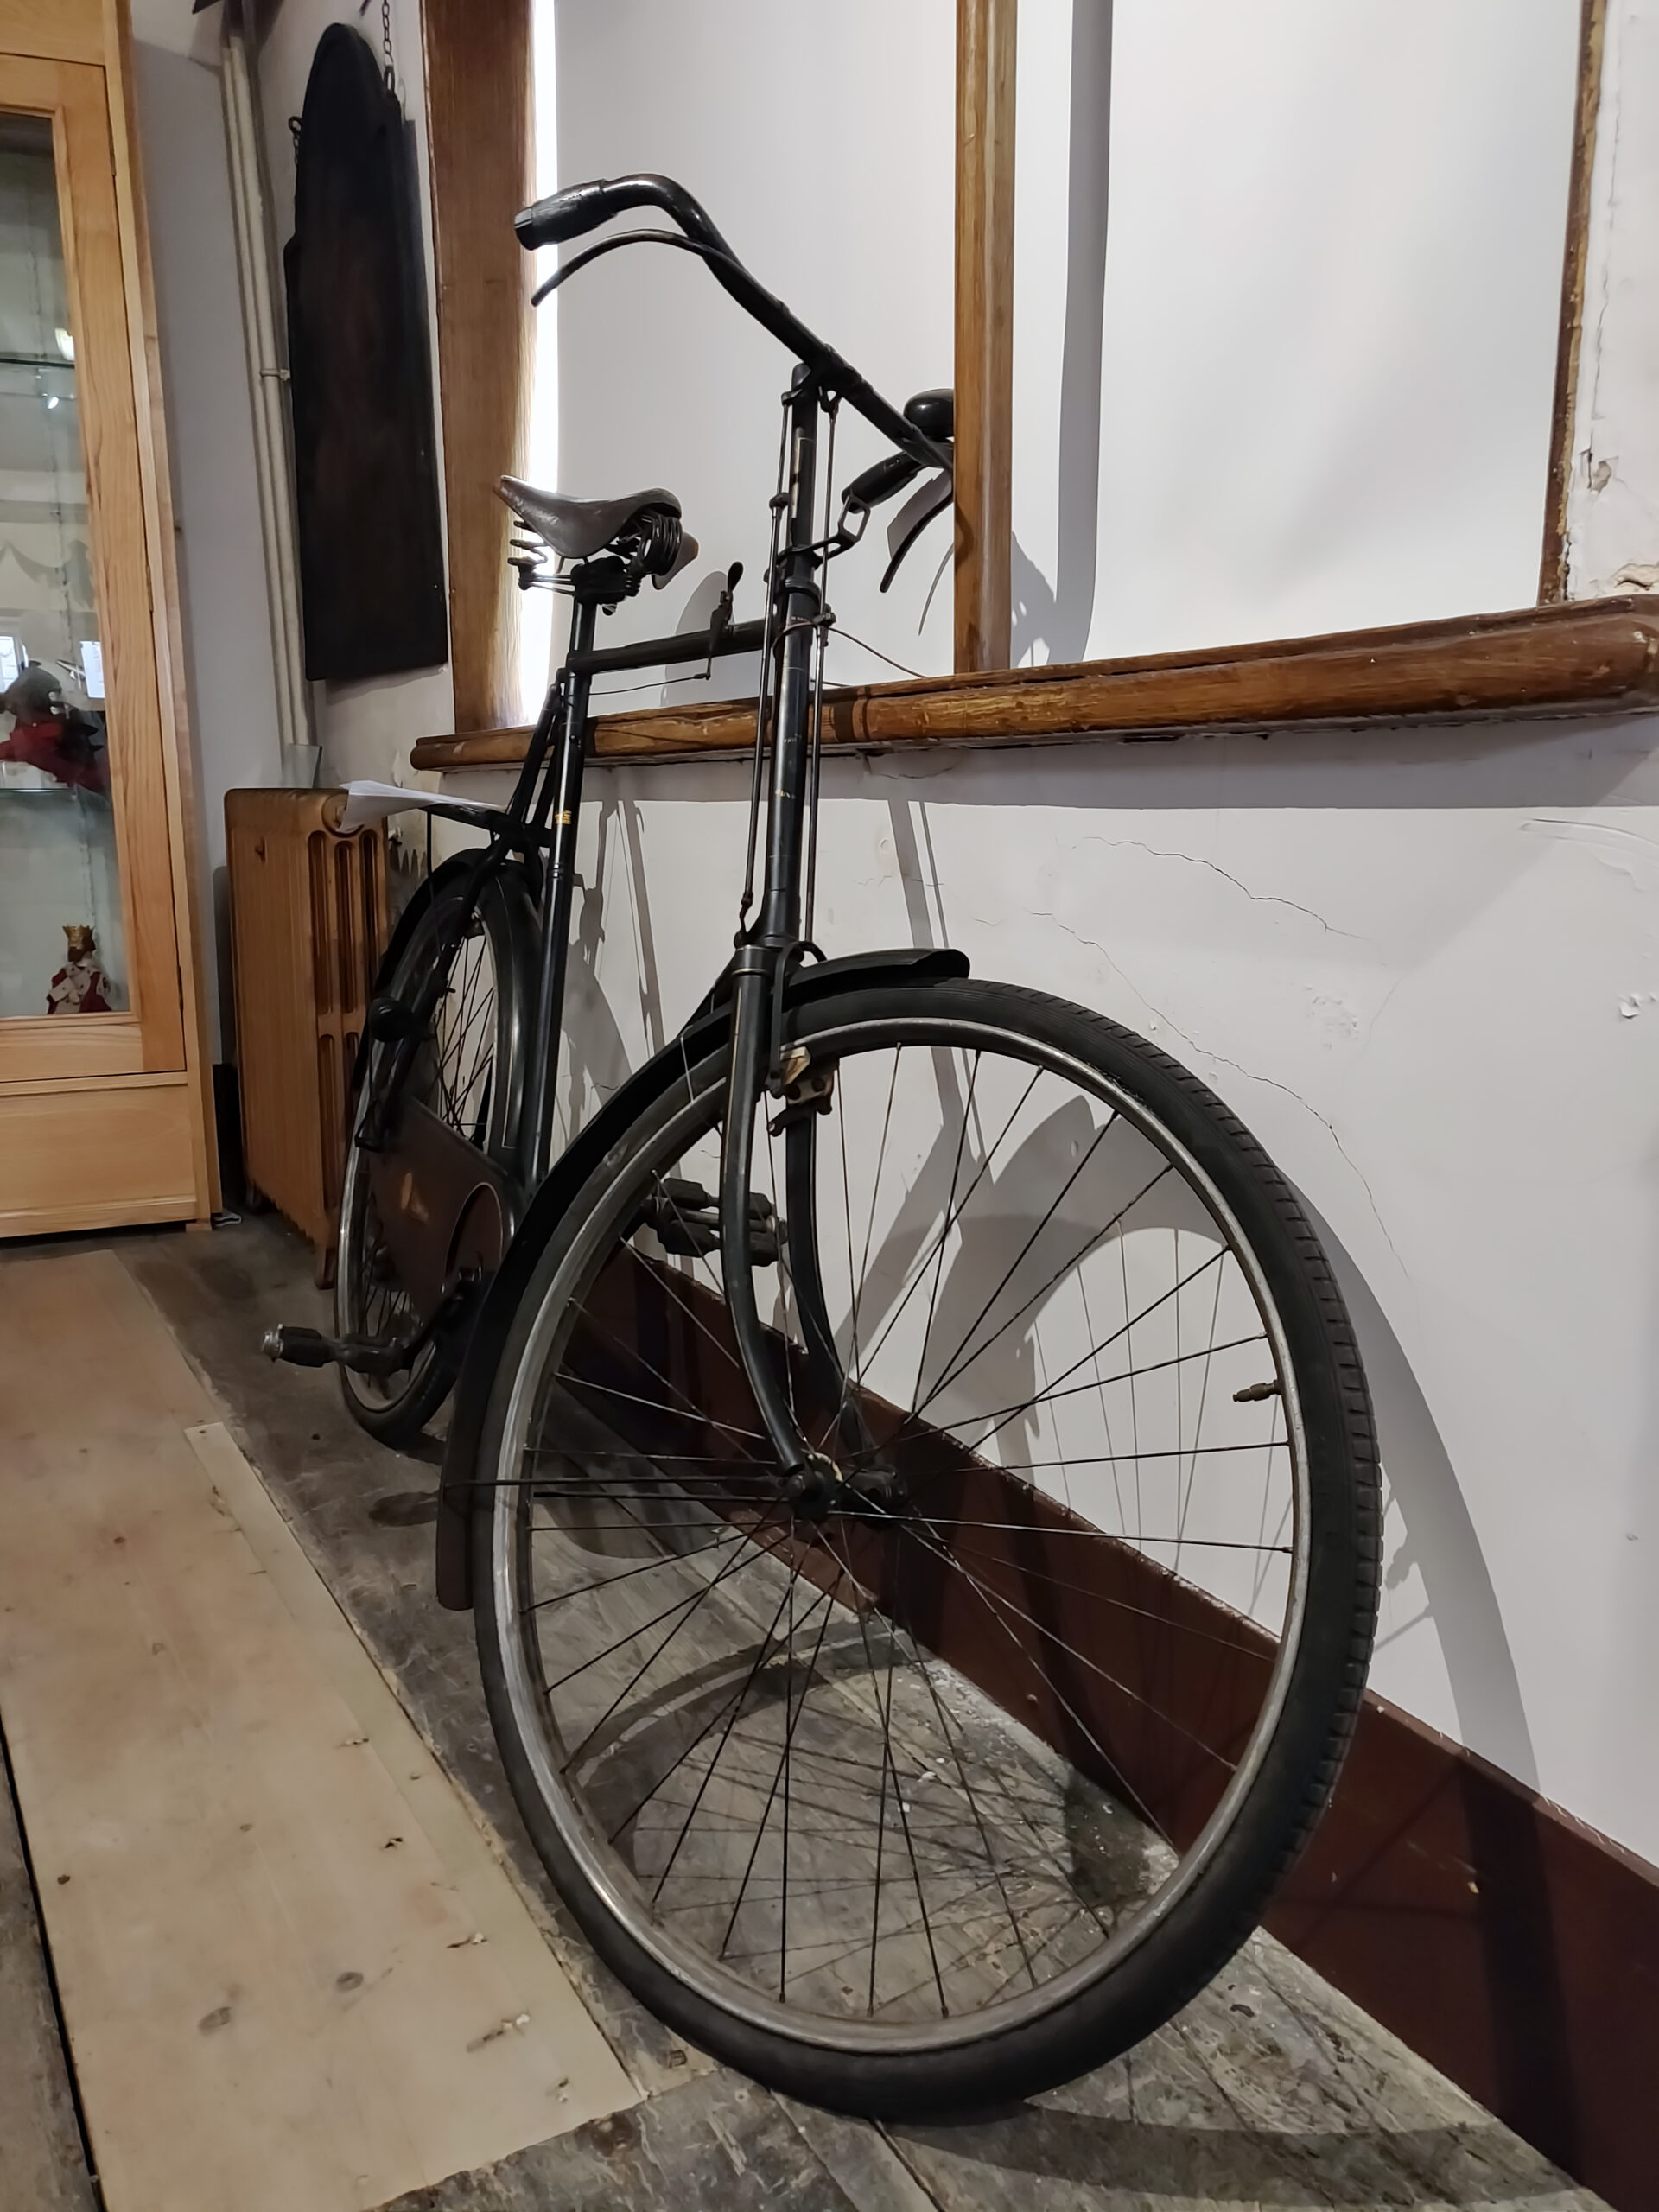 The Sturton Bike